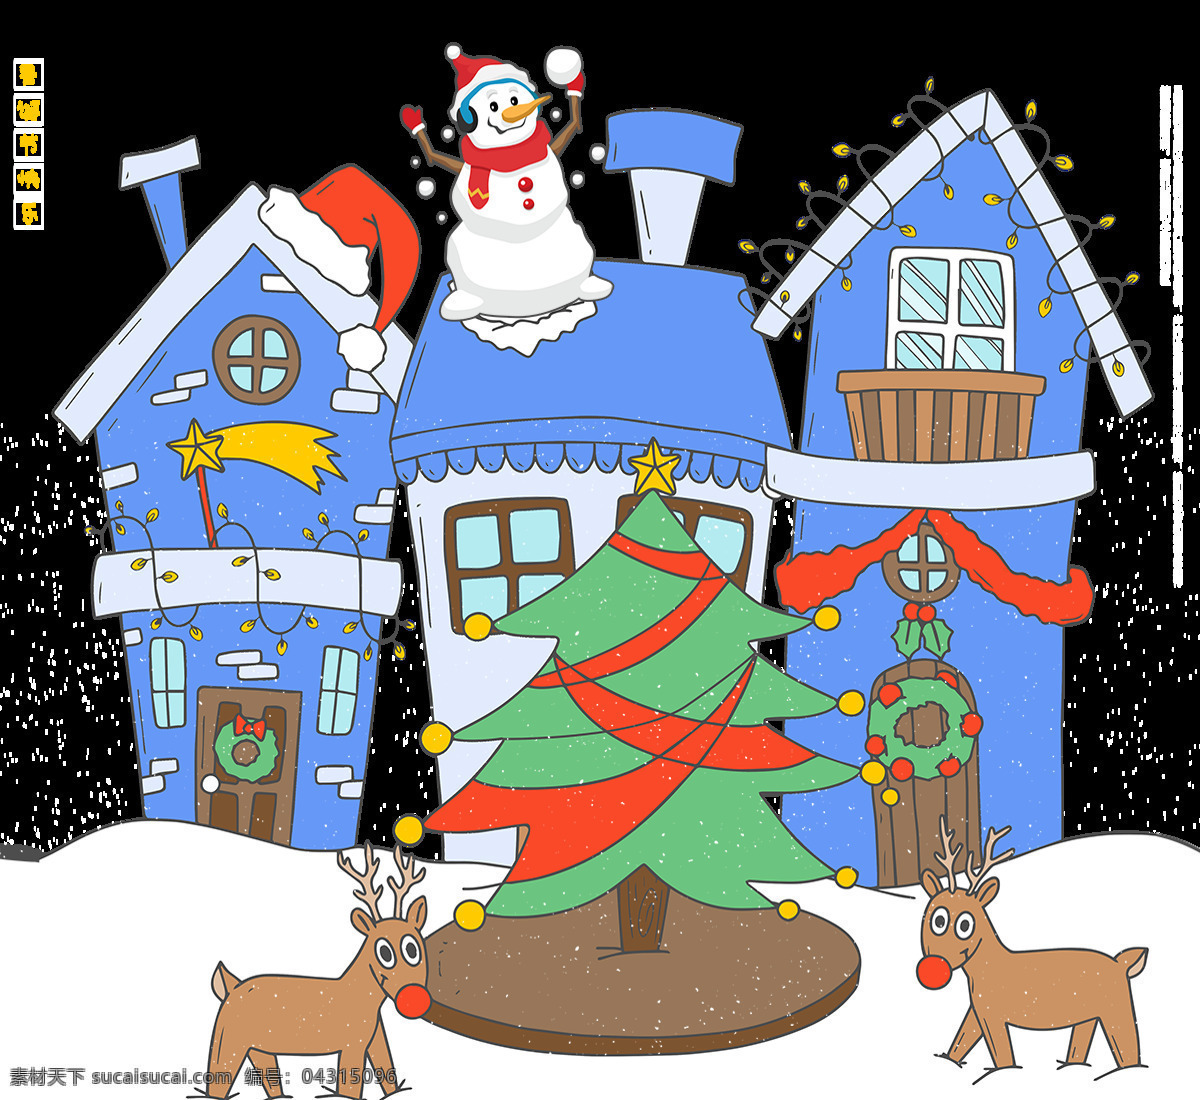 圣诞 主题 装饰 元素 2018圣诞 节日元素 卡通圣诞元素 设计元素 圣诞节 圣诞节快乐 圣诞麋鹿 圣诞树 圣诞素材 圣诞屋 圣诞装扮 圣诞装饰 雪人